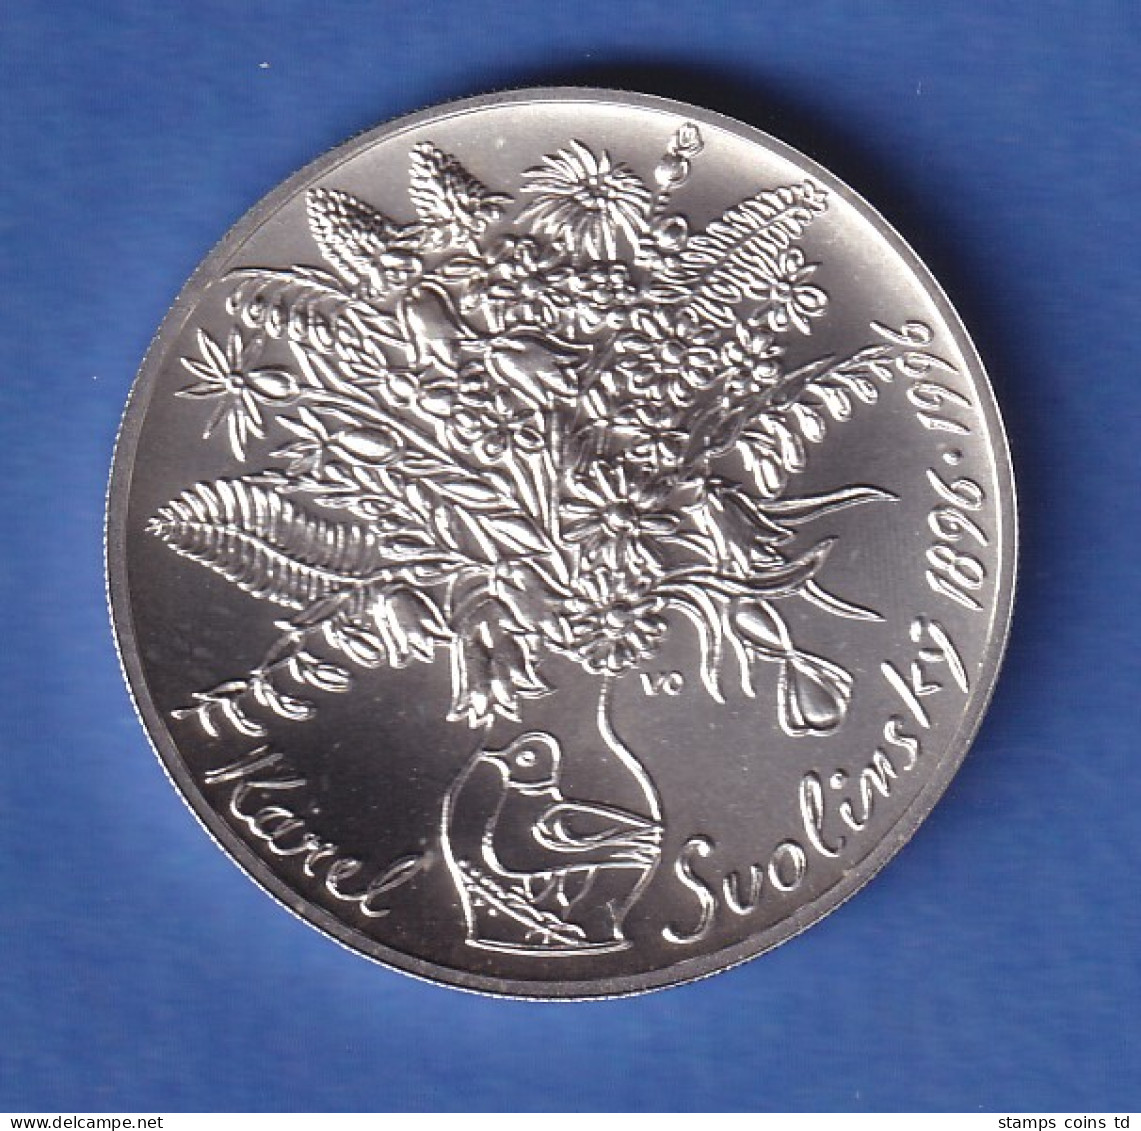 Tschechien 1996 Silbermünze 200 Kronen 100. Geburtstag Von Karel Svolinský Stg - Repubblica Ceca